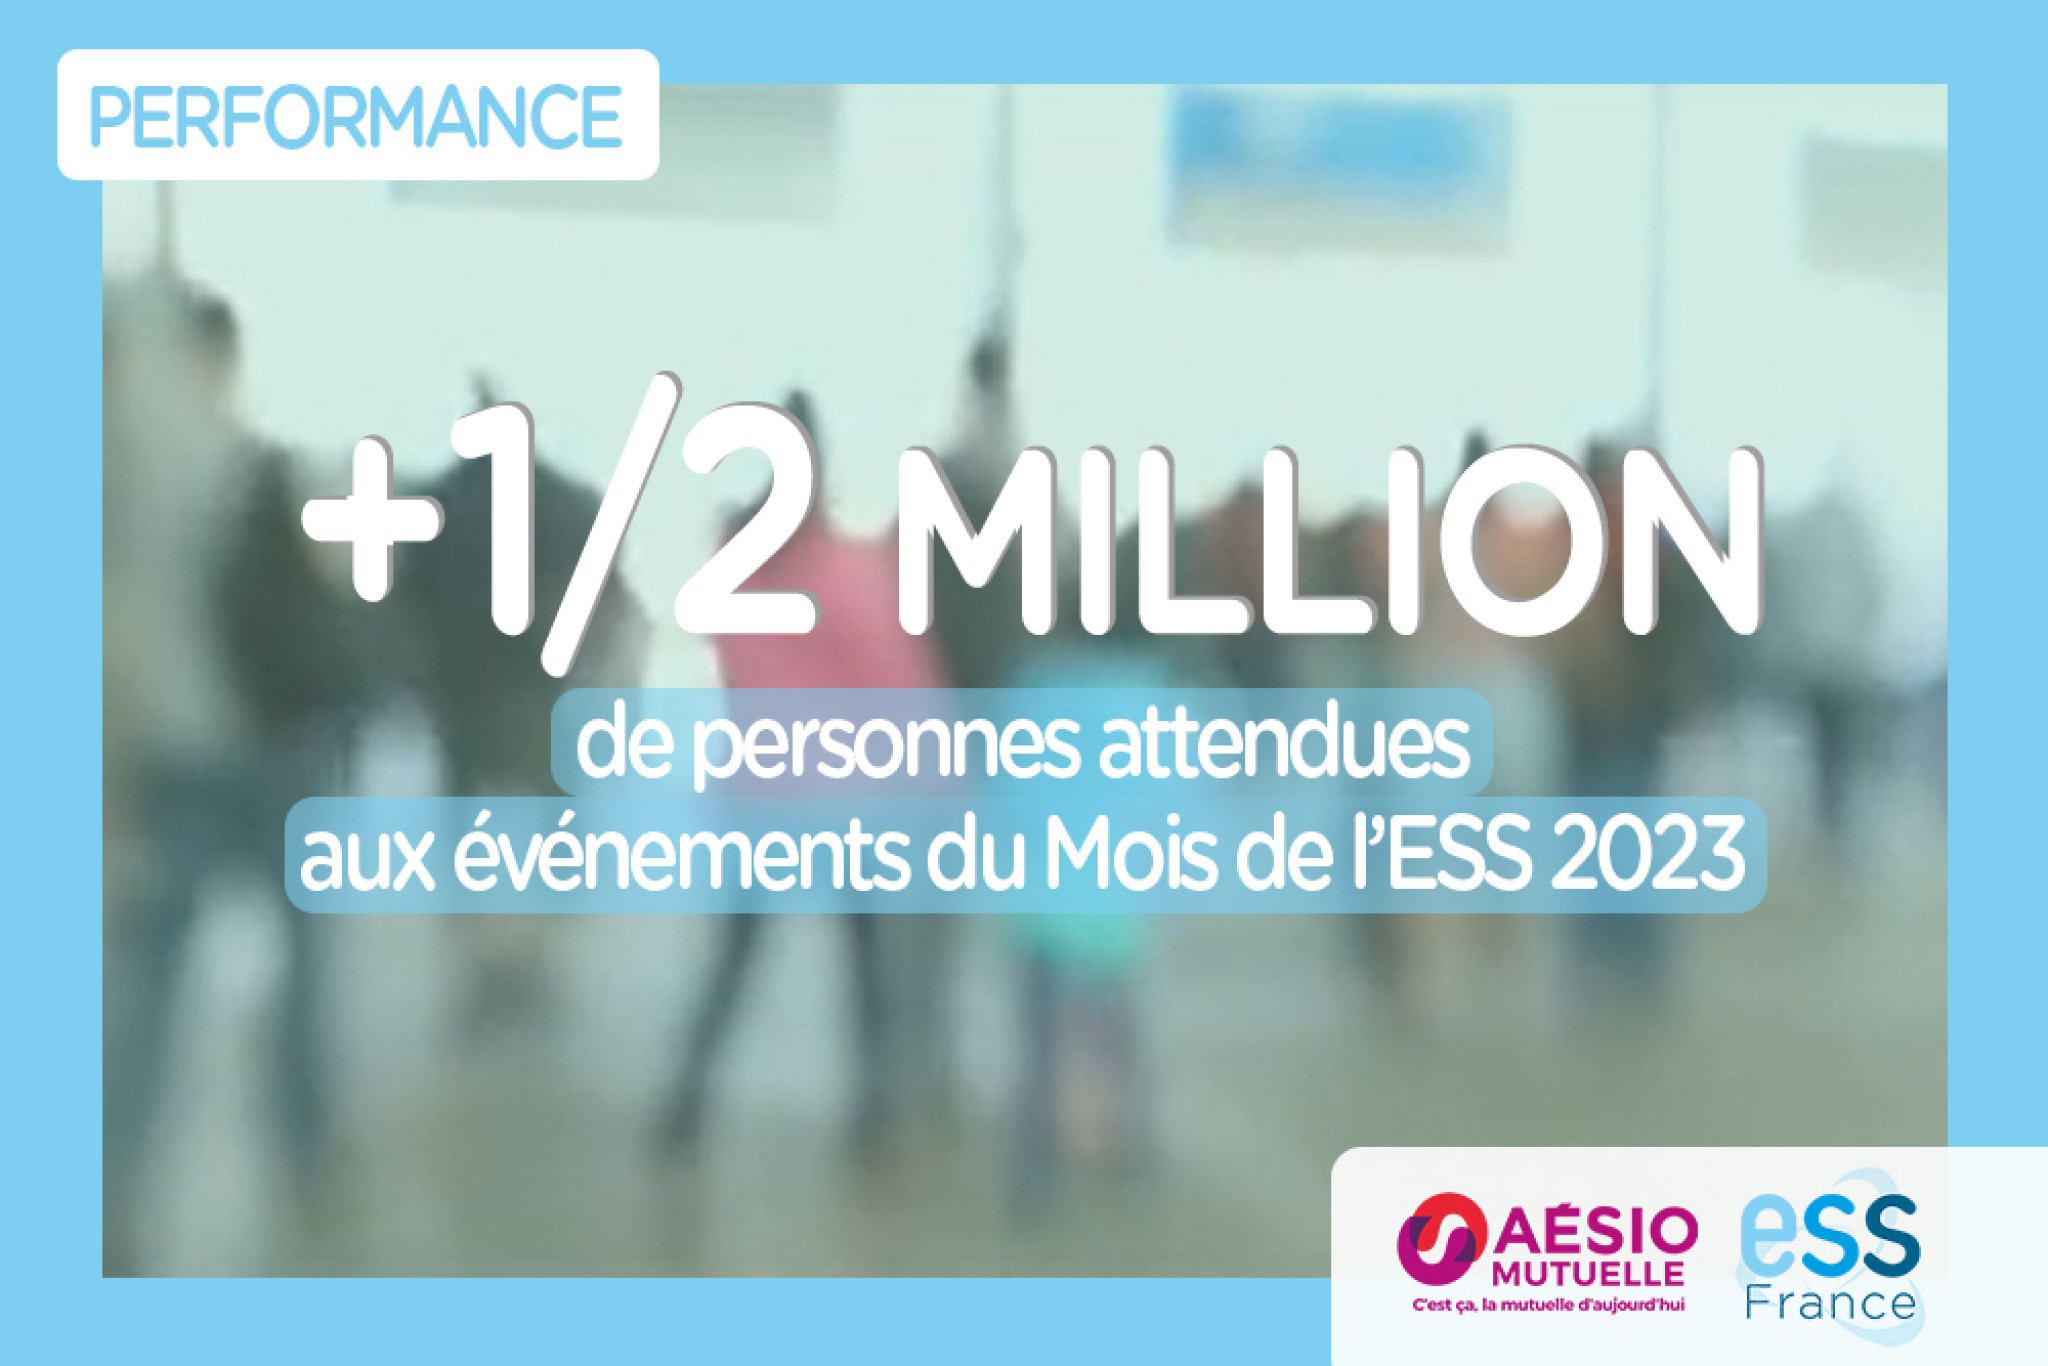 Chiffre de la semaine d'Aésio Mutuelle et d'ESS France : : +1/2 millions de personnes attendues aux événements du Mois de l’ESS 2023 